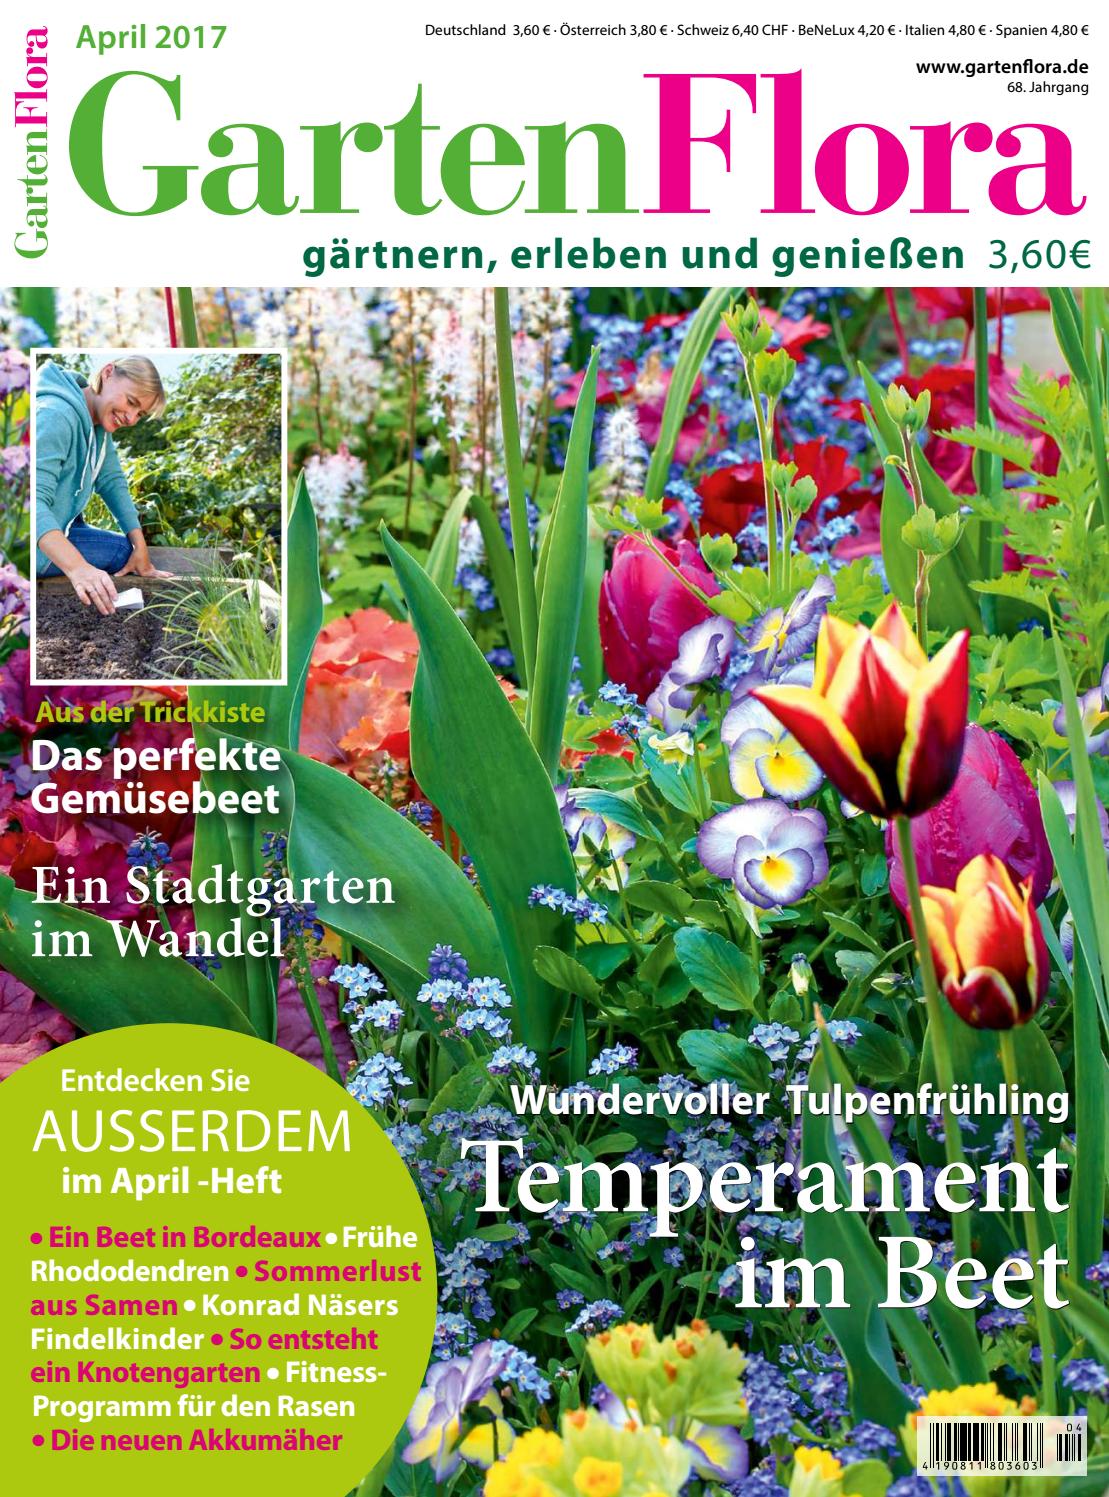 Bienen Im Garten Best Of Cfcfcfcfecefcefy by Elcicario43 issuu